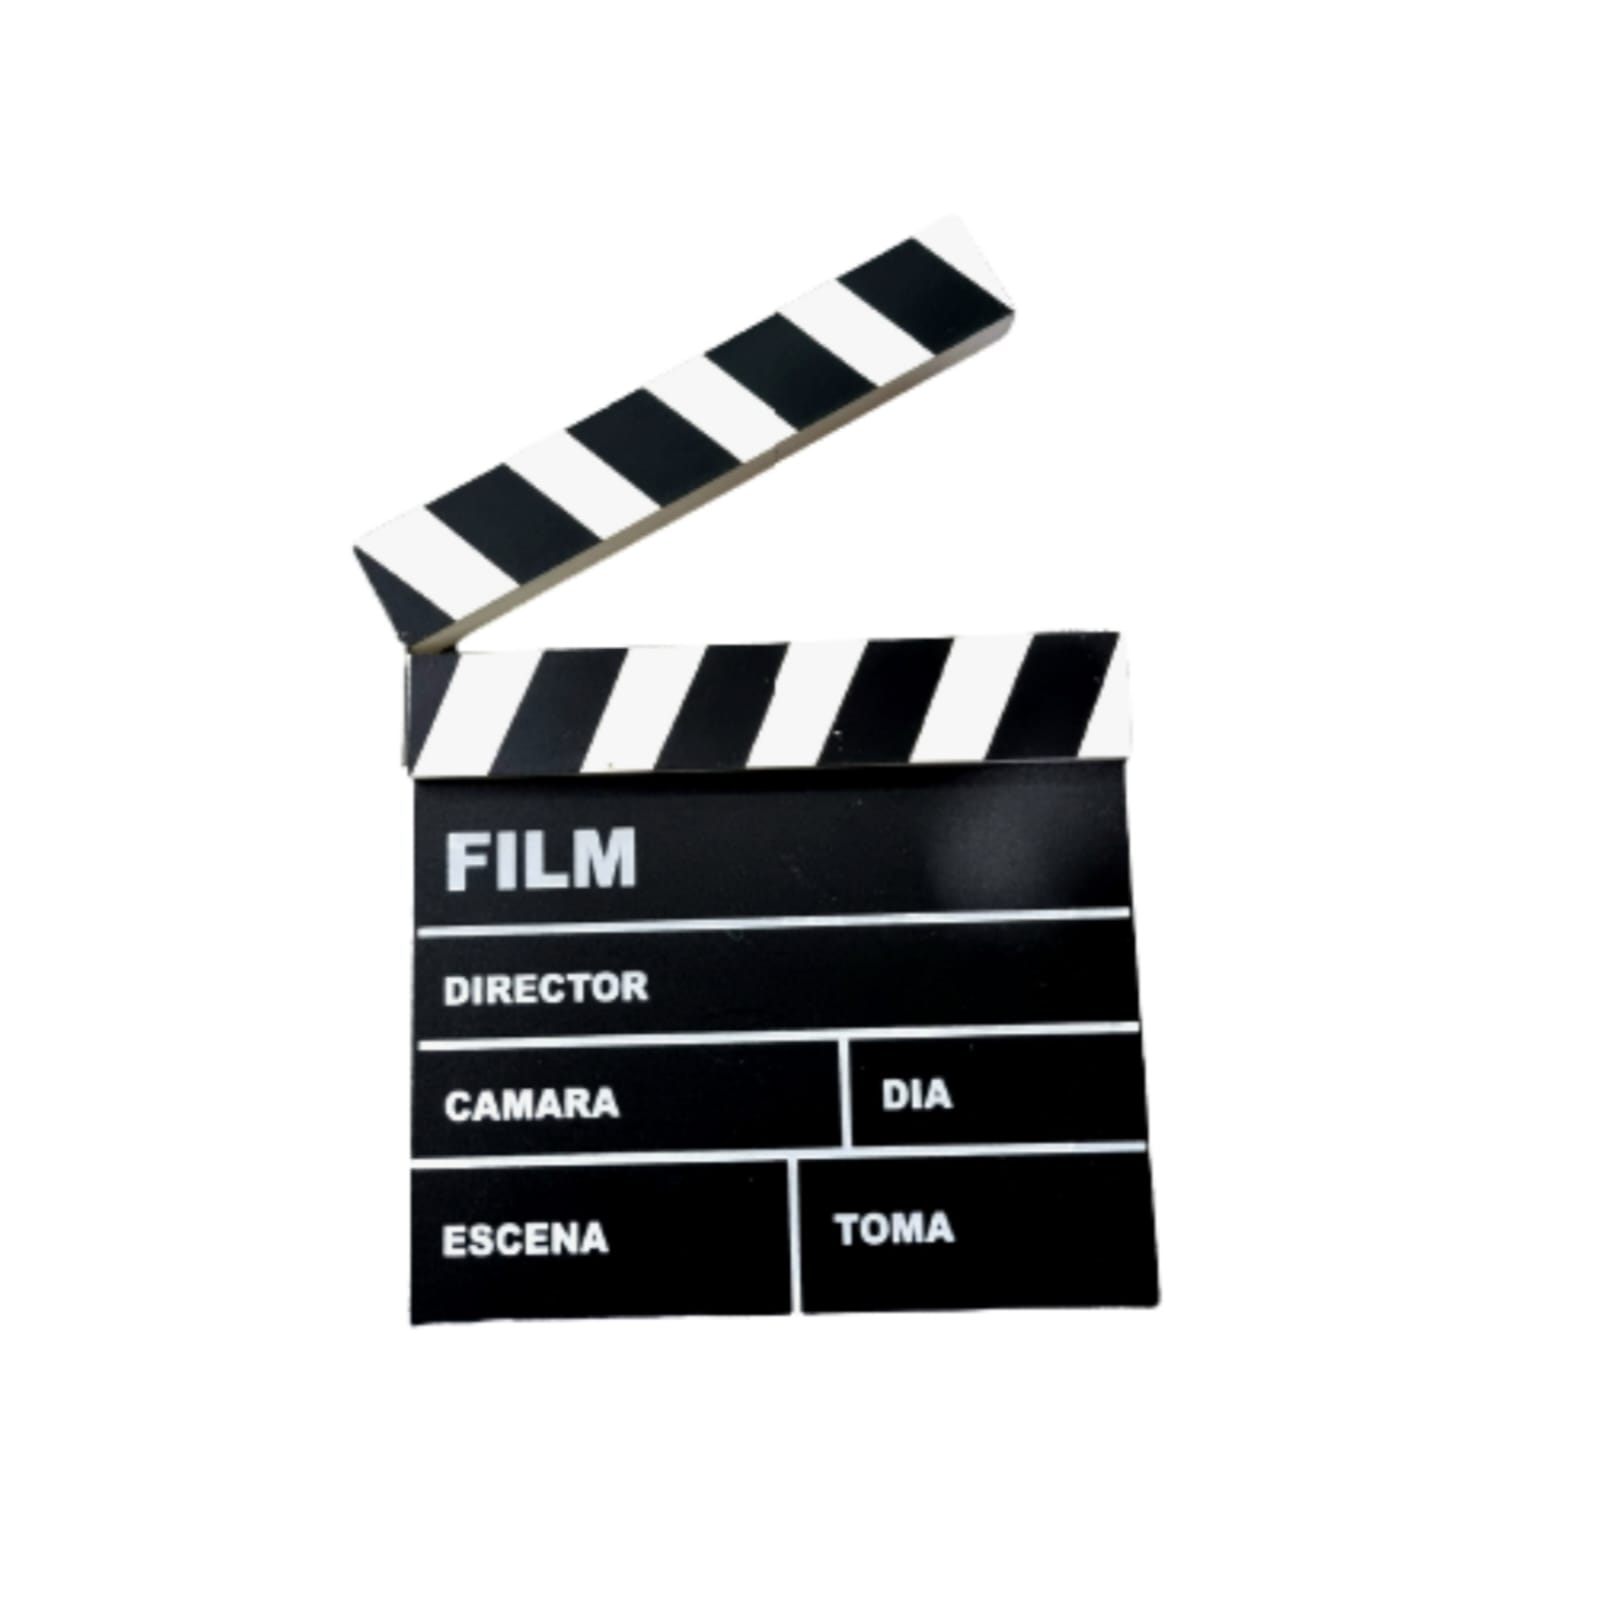  Claqueta Director de cine de madera accesorio acción cámara  fotografía de estudio profesional de vídeo slateboard-black : Electrónica